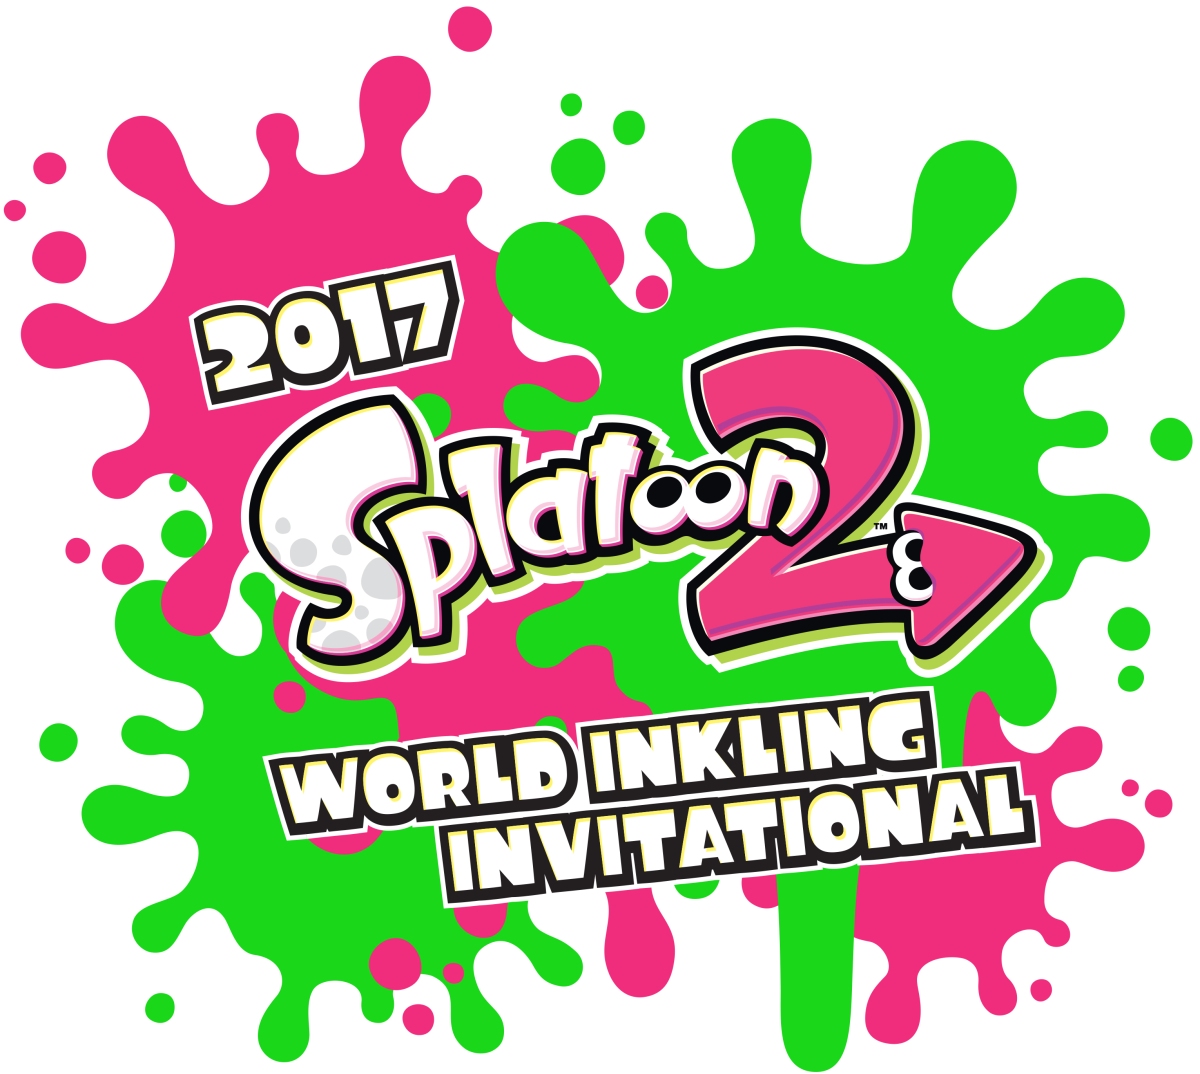 Com'è andato a finire lo Splatoon 2 World Inkling Invitational?